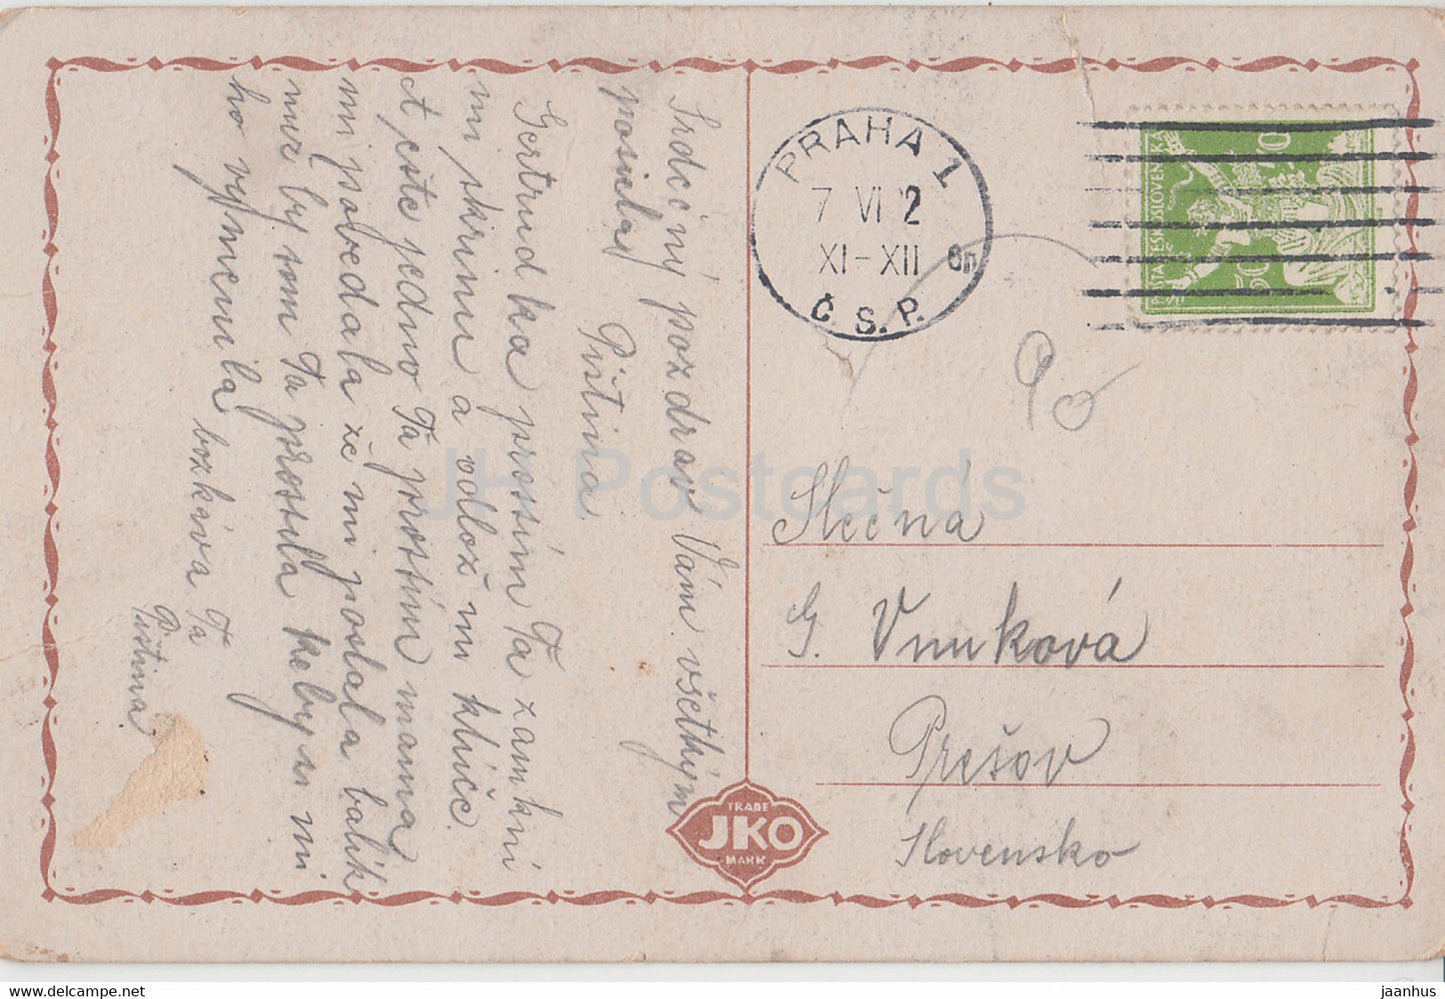 Bohumin - Oderberg - tram - carte postale ancienne - République tchèque - Tchécoslovaquie - occasion